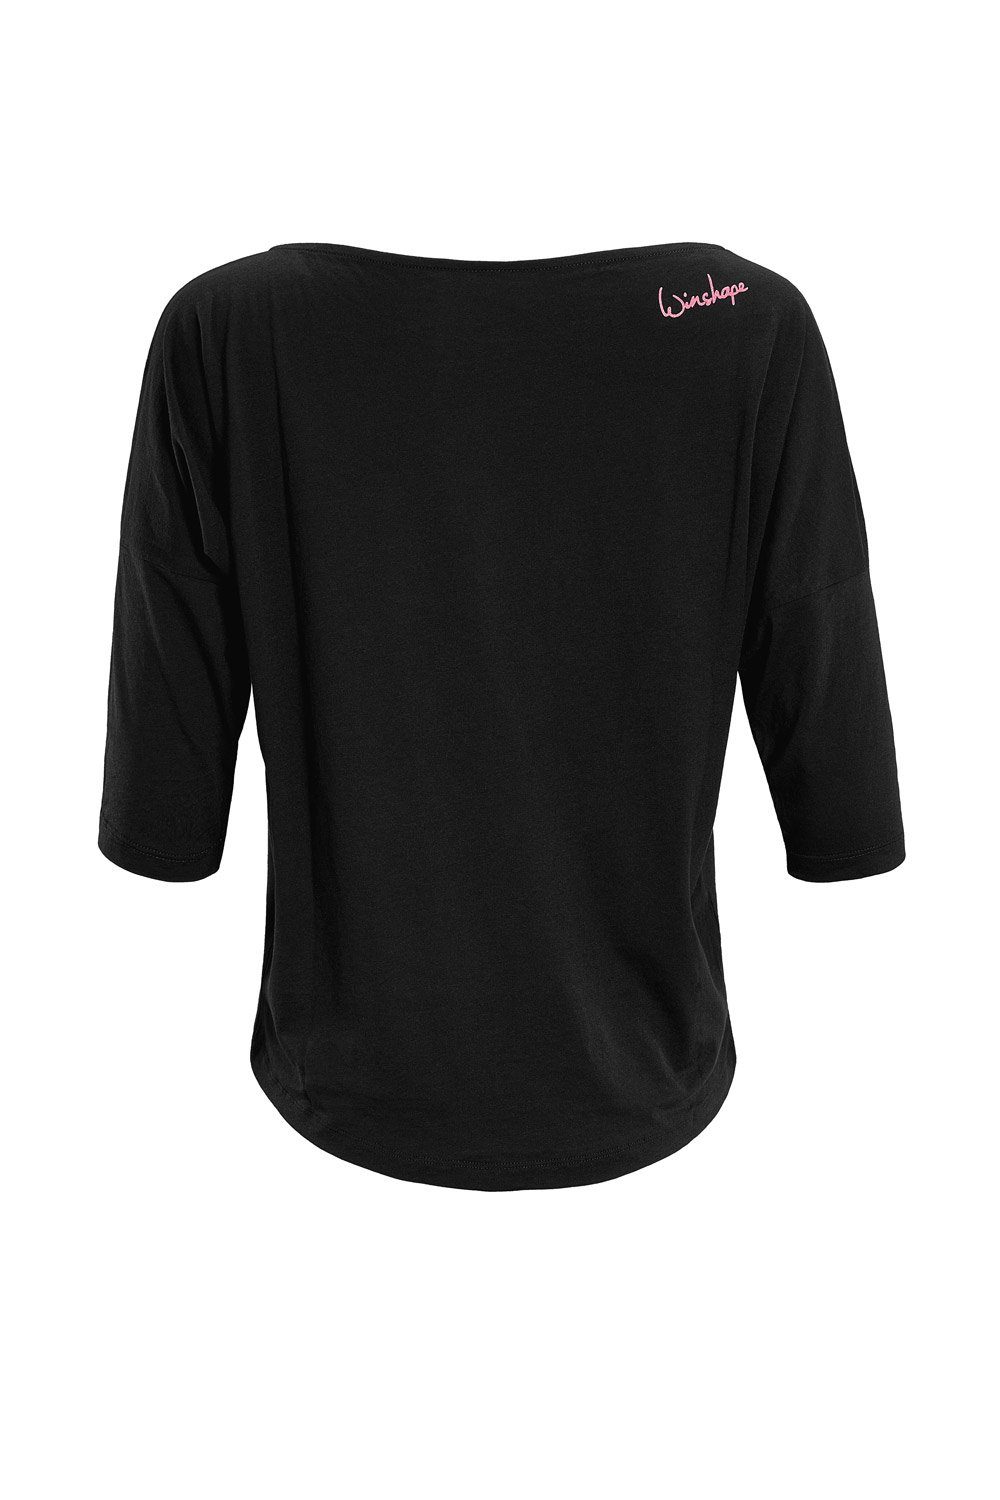 Winshape 3/4-Arm-Shirt MCS001 ultra leicht pinkem Glitzer-Aufdruck Neon mit